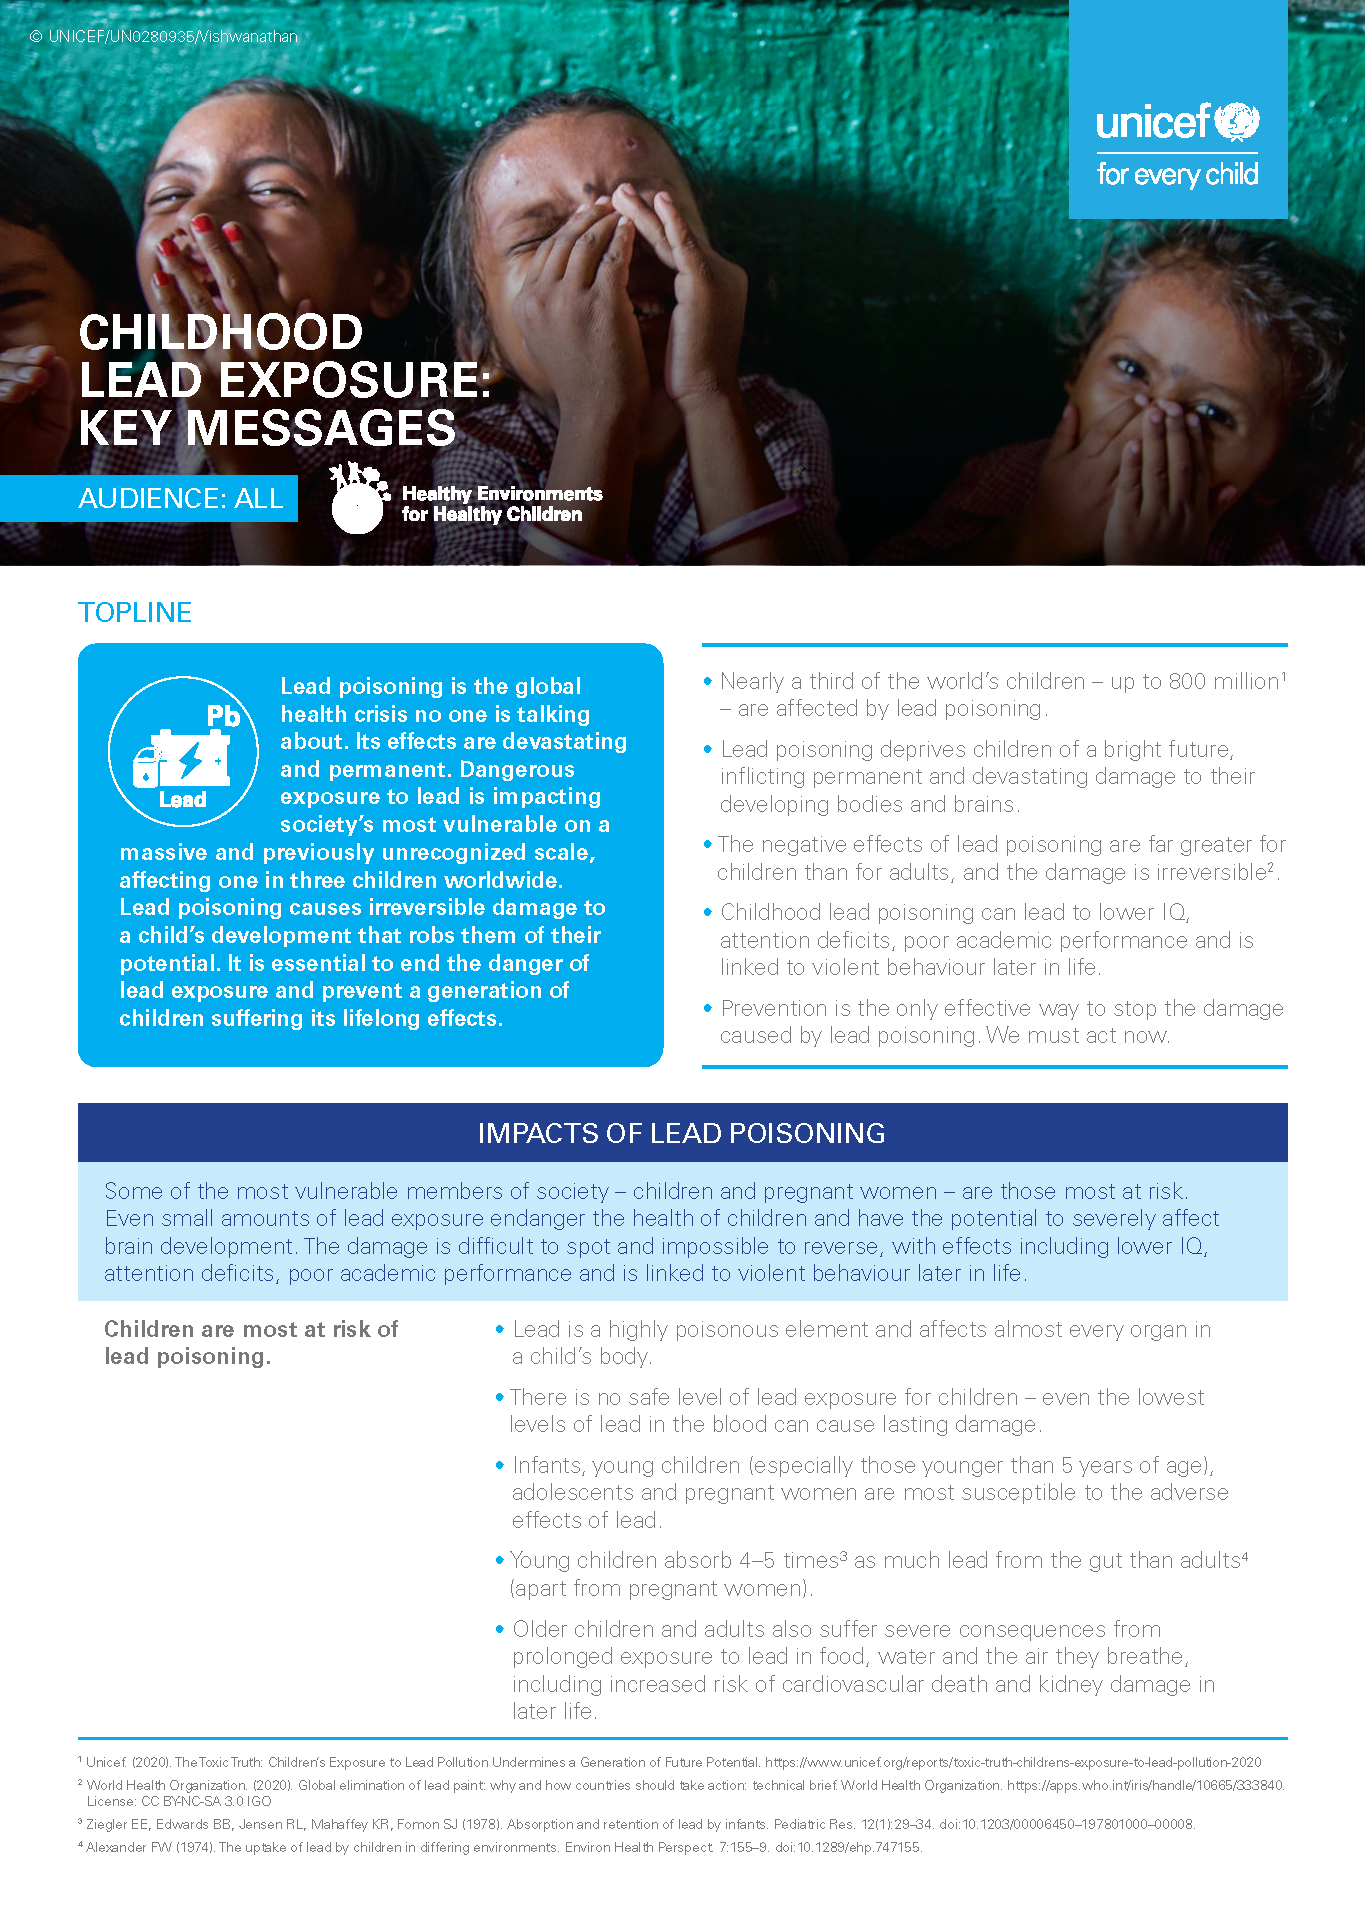 Key messages on childhood lead exposure